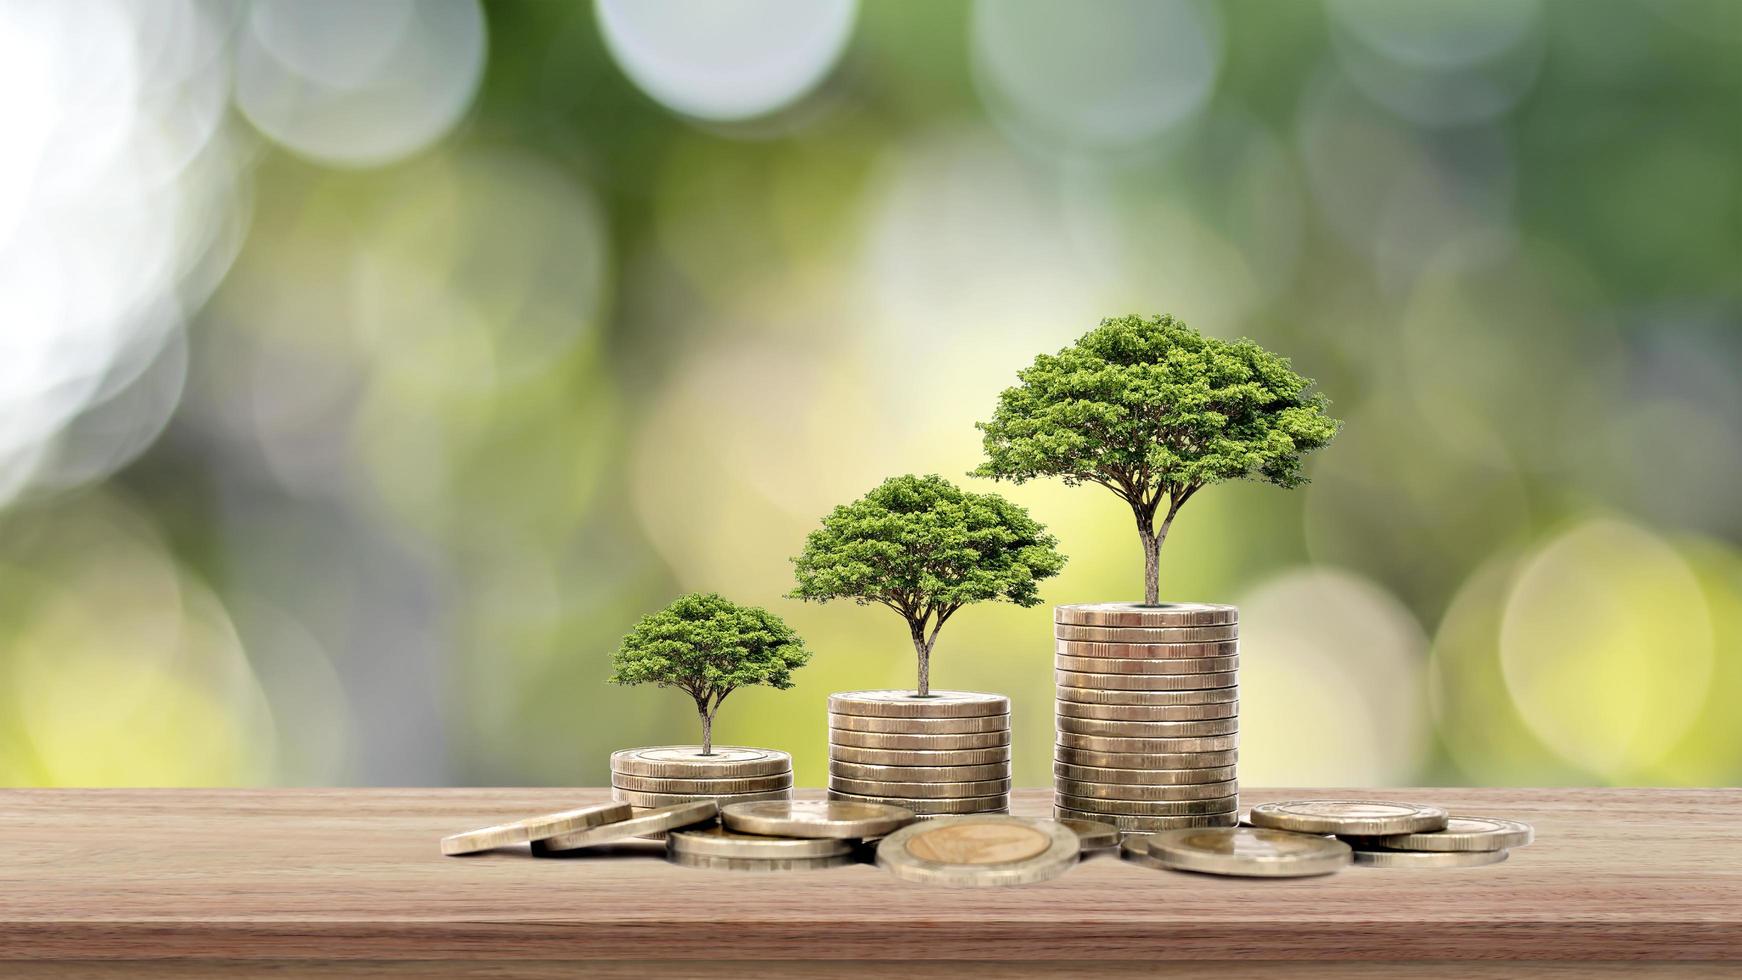 el árbol crece sobre una pila de dinero en una mesa de madera y un fondo natural, el concepto de inversión financiera y expansión económica foto